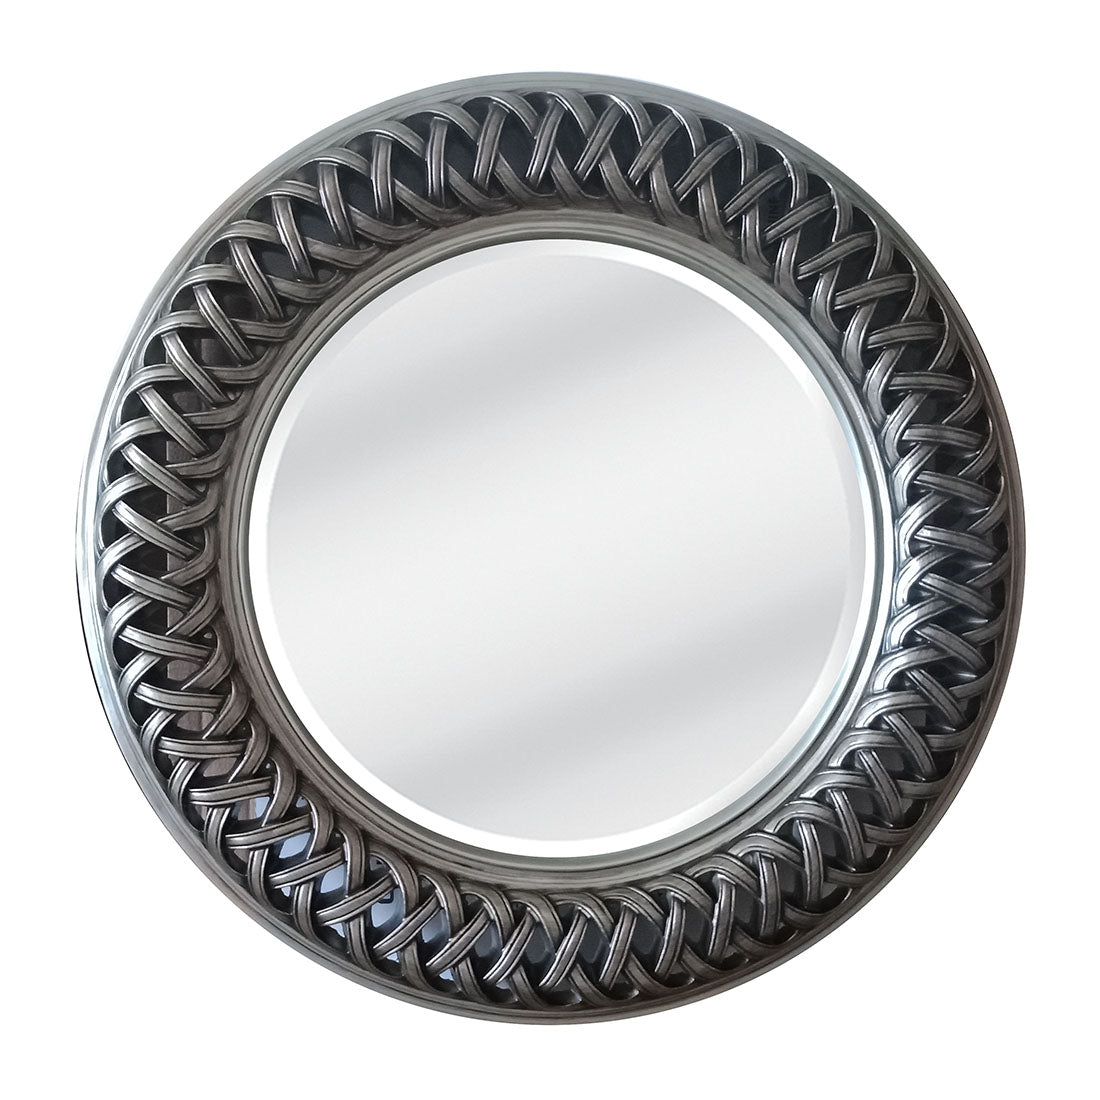 Dark Antique Silver Mirror - Round